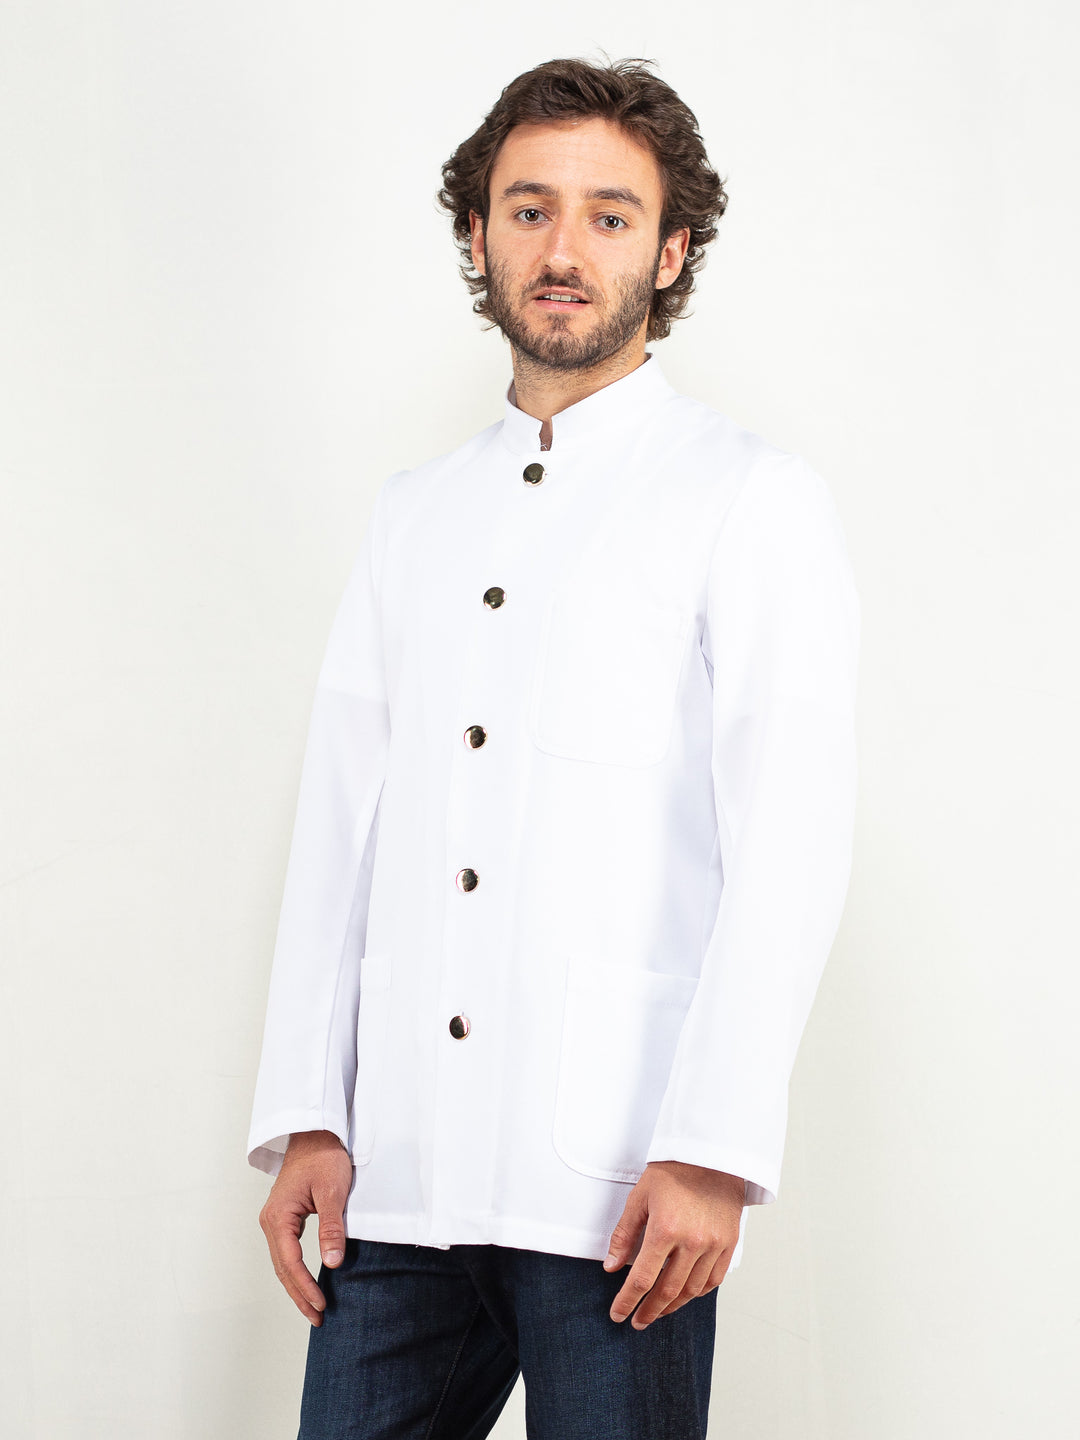 Men White Jacket crisp white light jacket band collar long sleeve golden button jacket cabin crew style jacket minimalist size medium